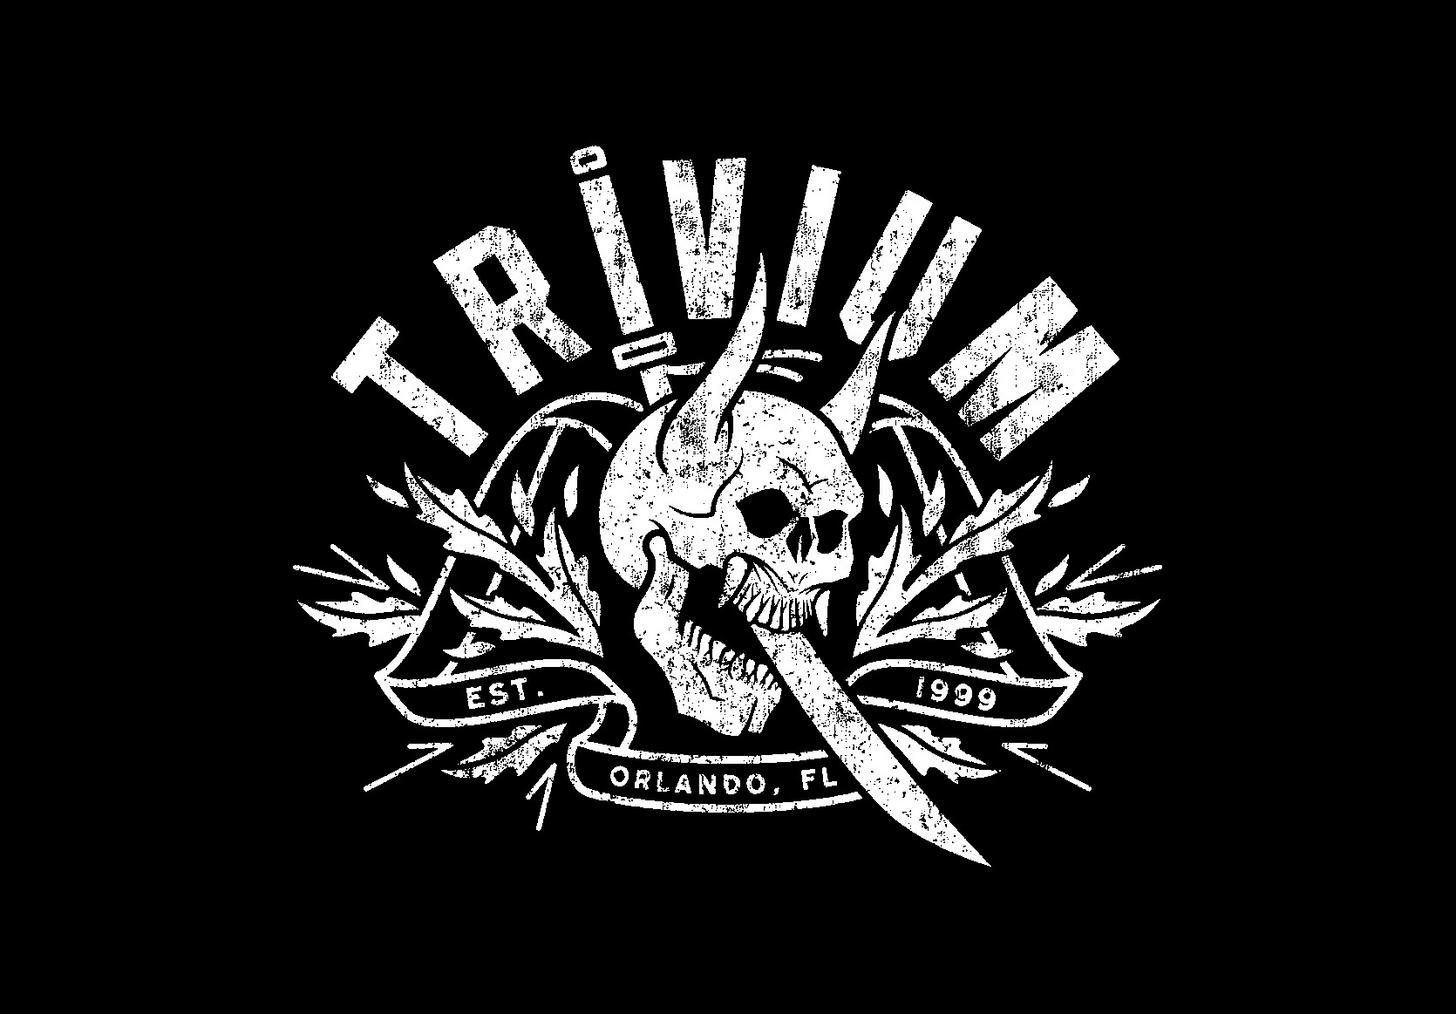 Trivium Tour 2018 , HD Wallpaper & Backgrounds